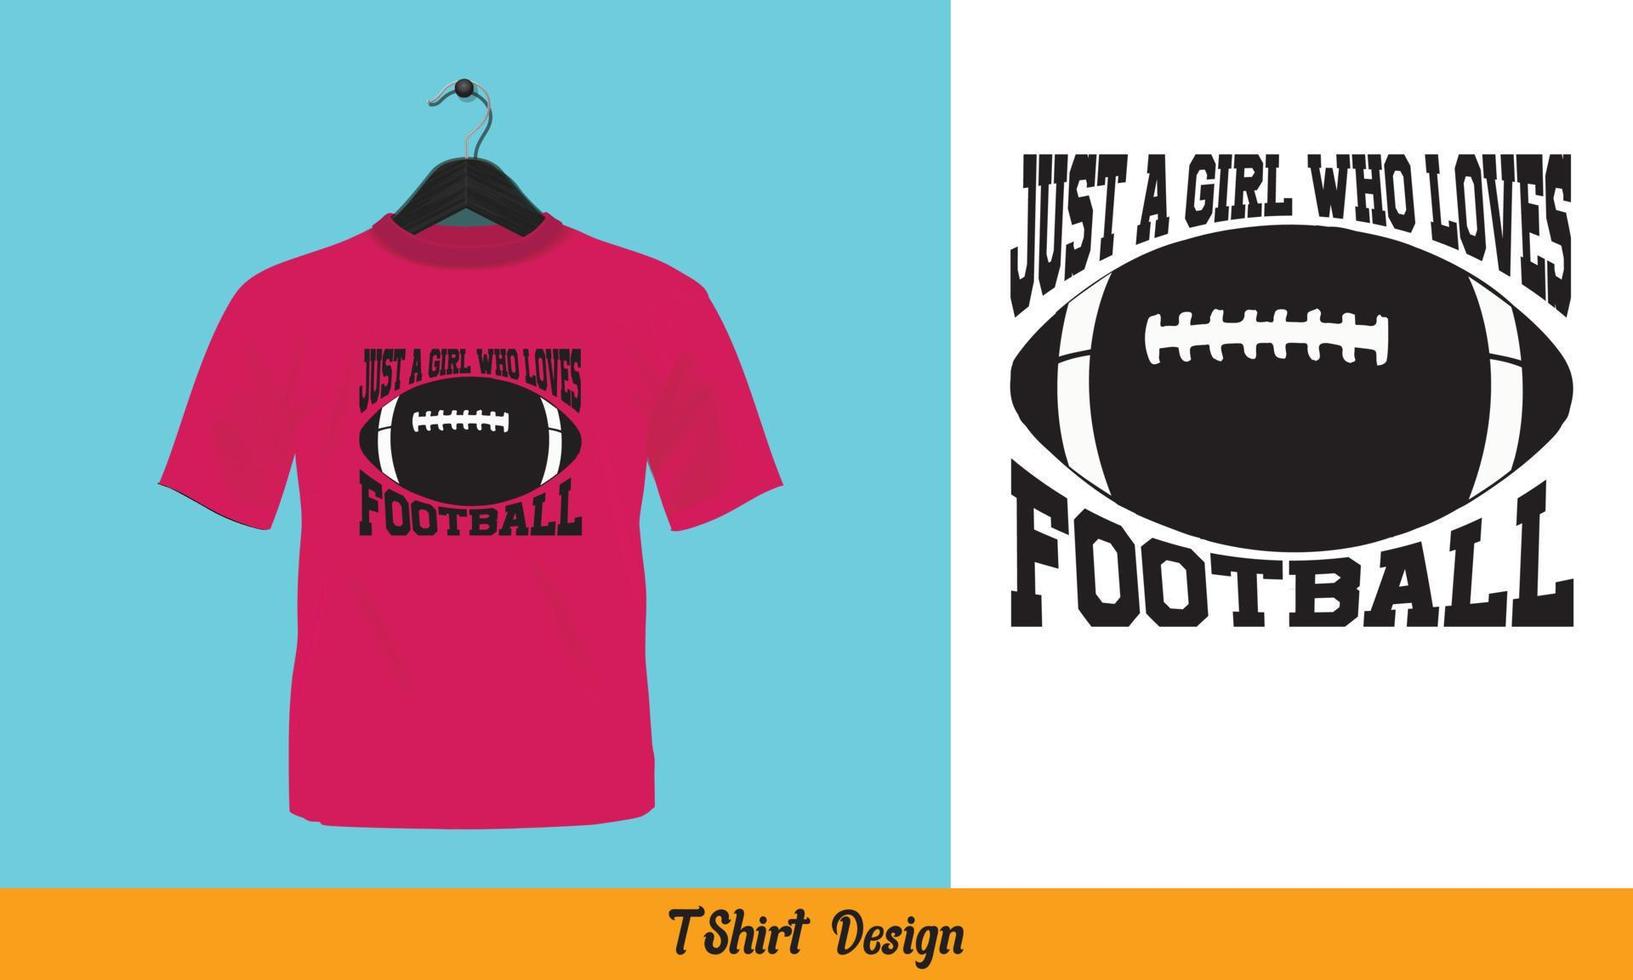 nur ein Mädchen, das Fußball liebt - Typografie-T-Shirt-Design. vektor